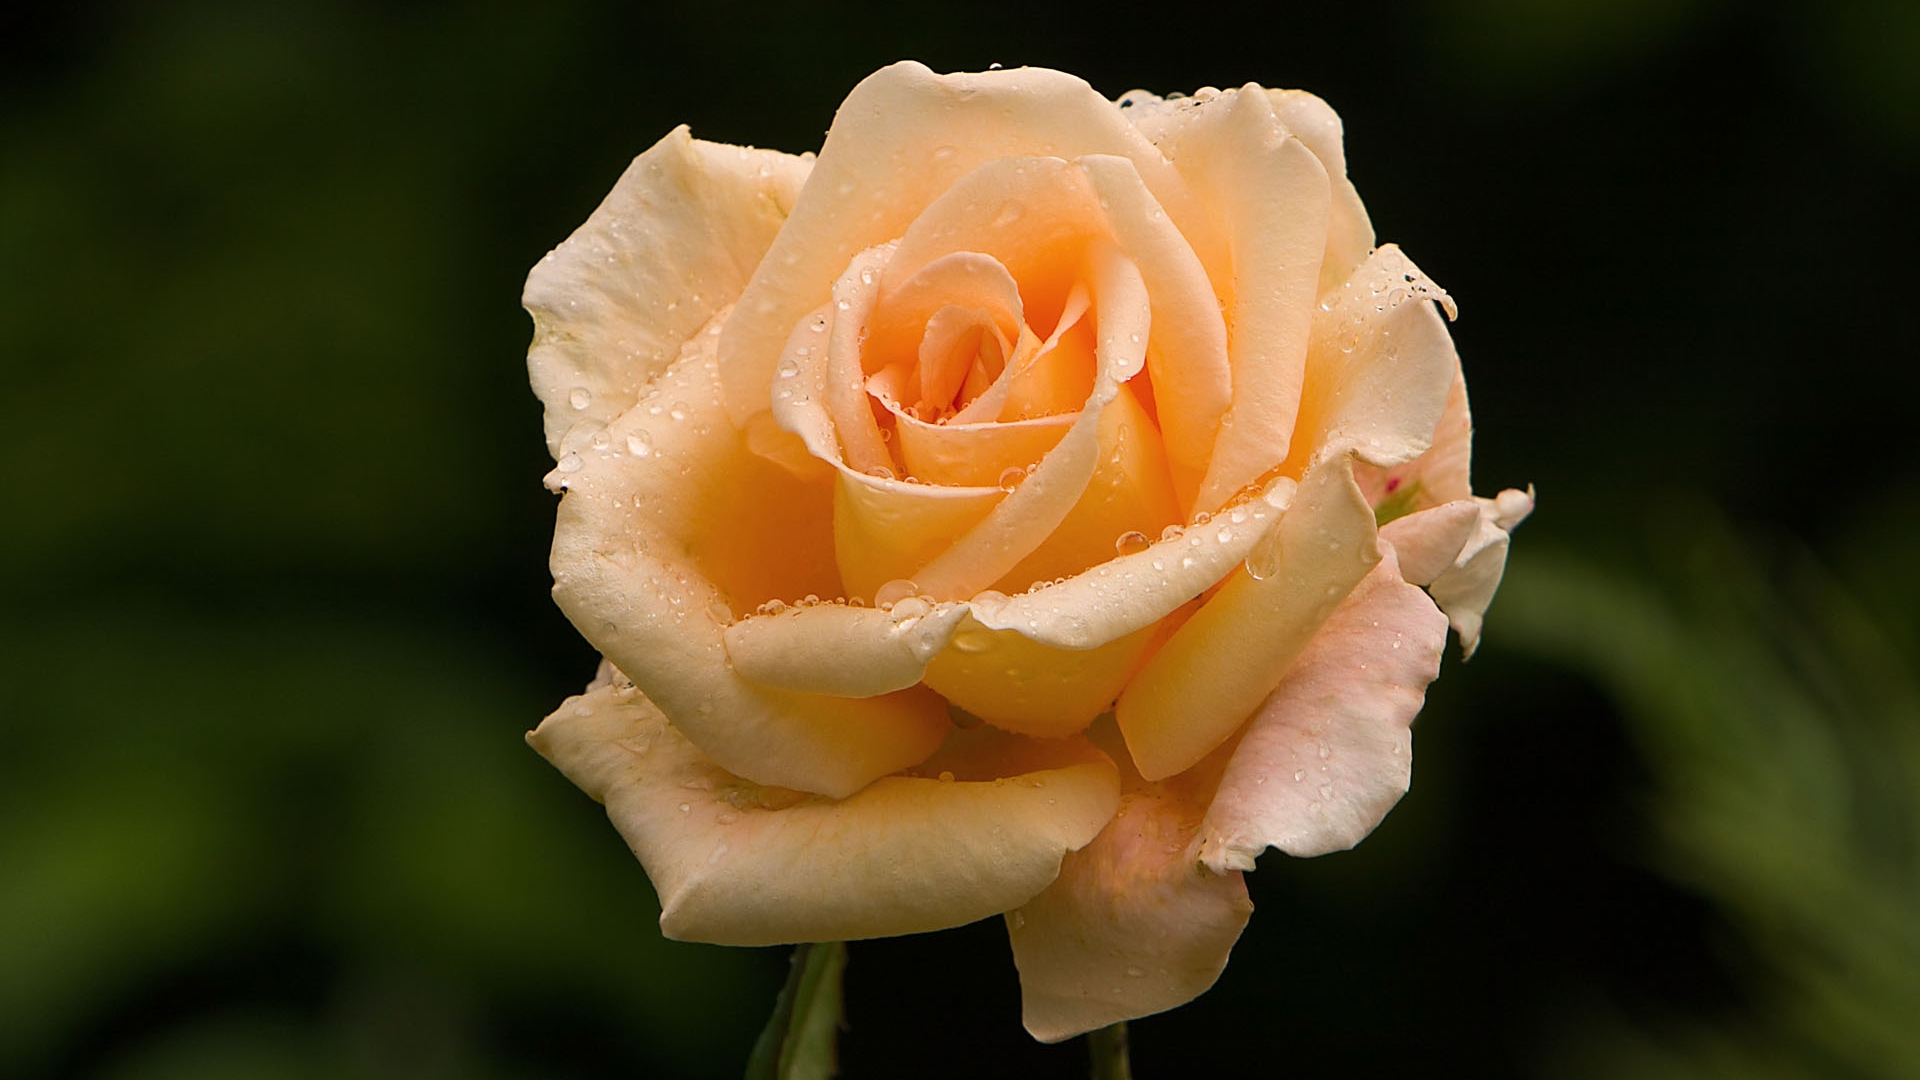 Delicate orange rose